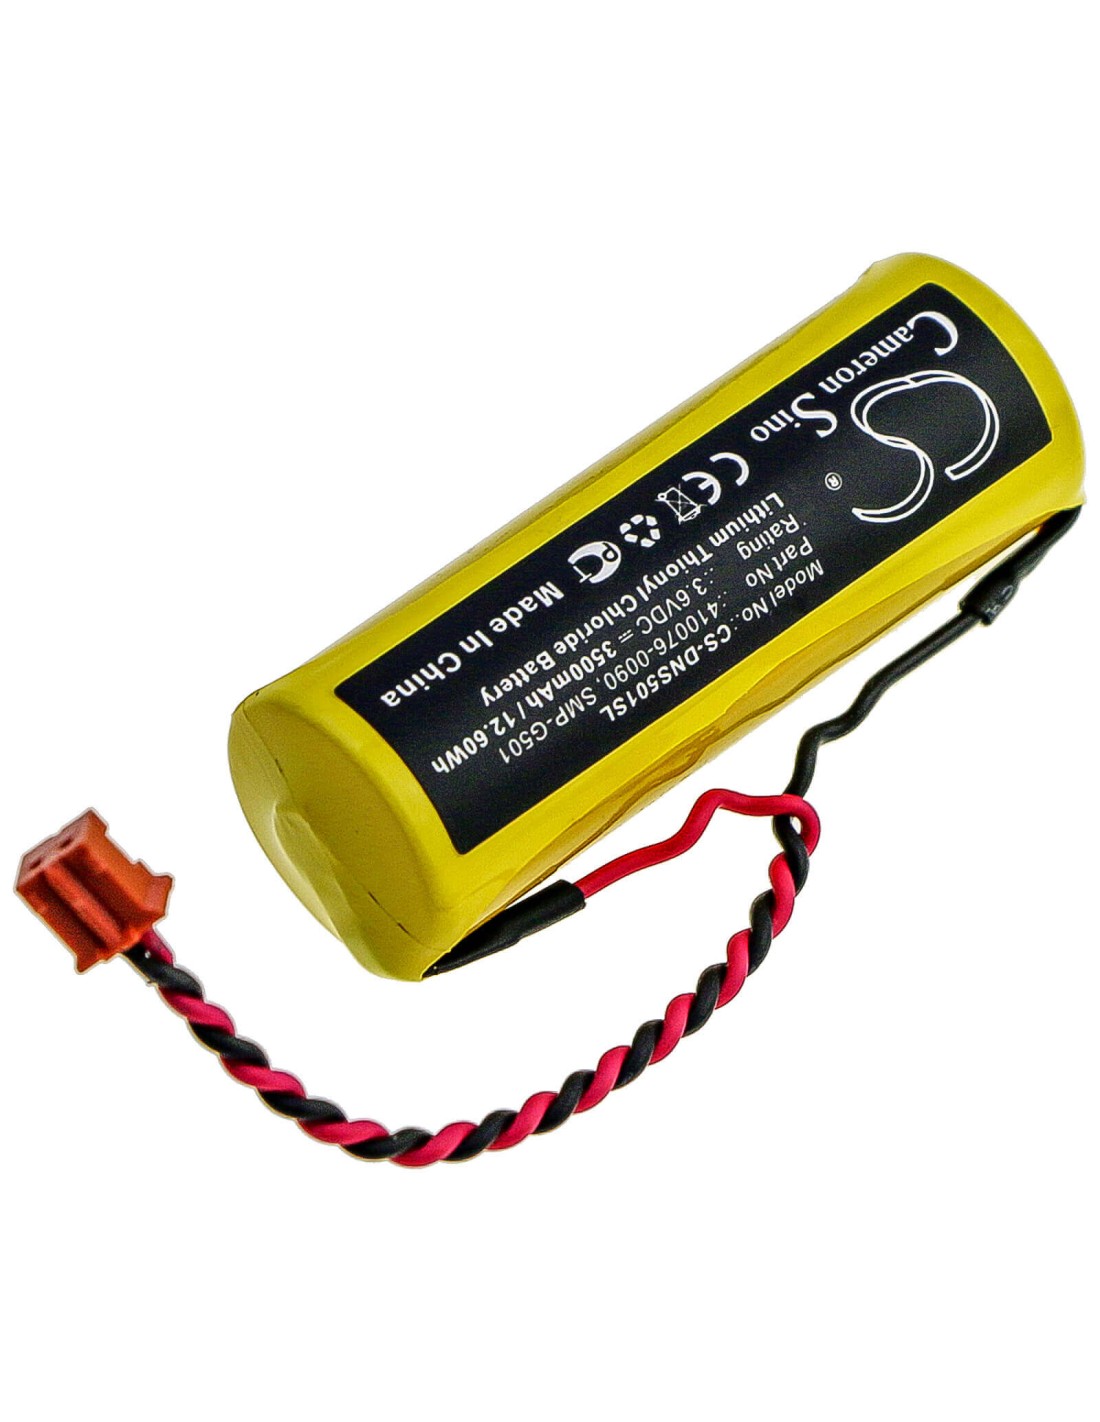 Battery for Denso, 410076-0090, 410076-0150, 410076-0180 3.6V, 3500mAh - 12.60Wh